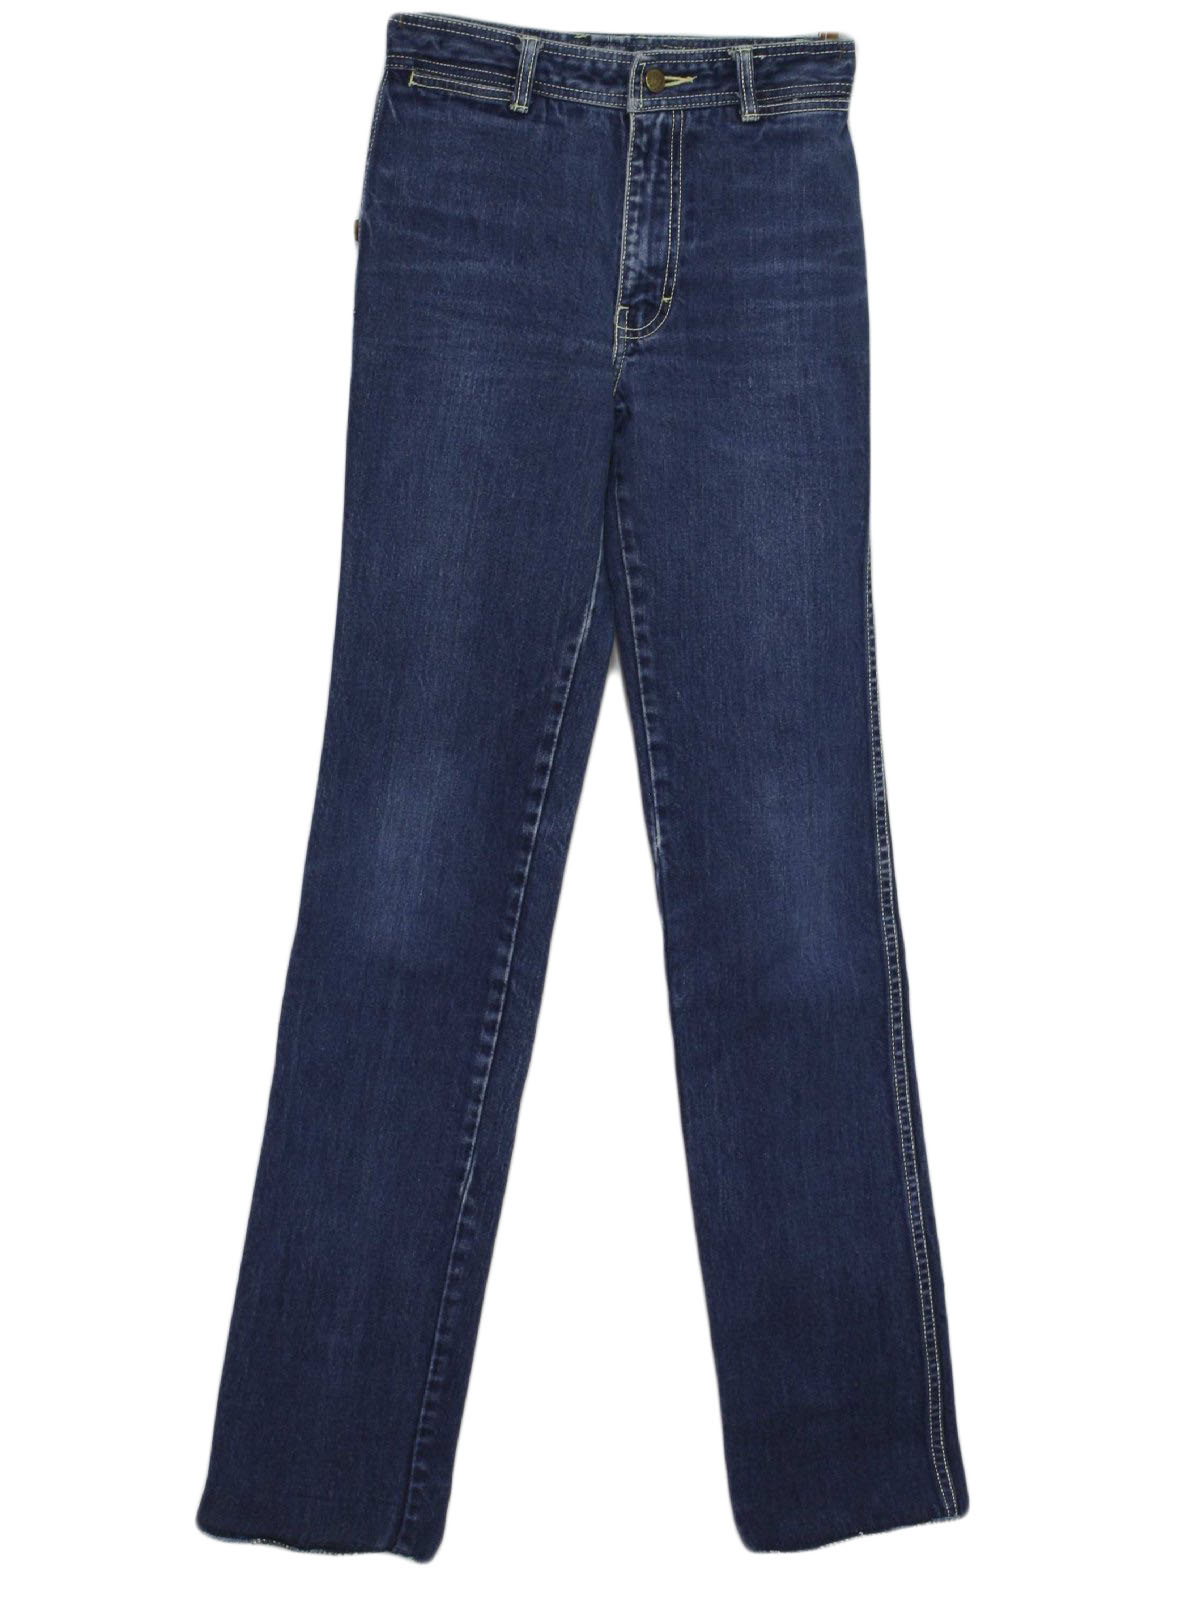 Retro 90s Pants (Jordache) : 80s -Jordache- Womens blue cotton denim ...